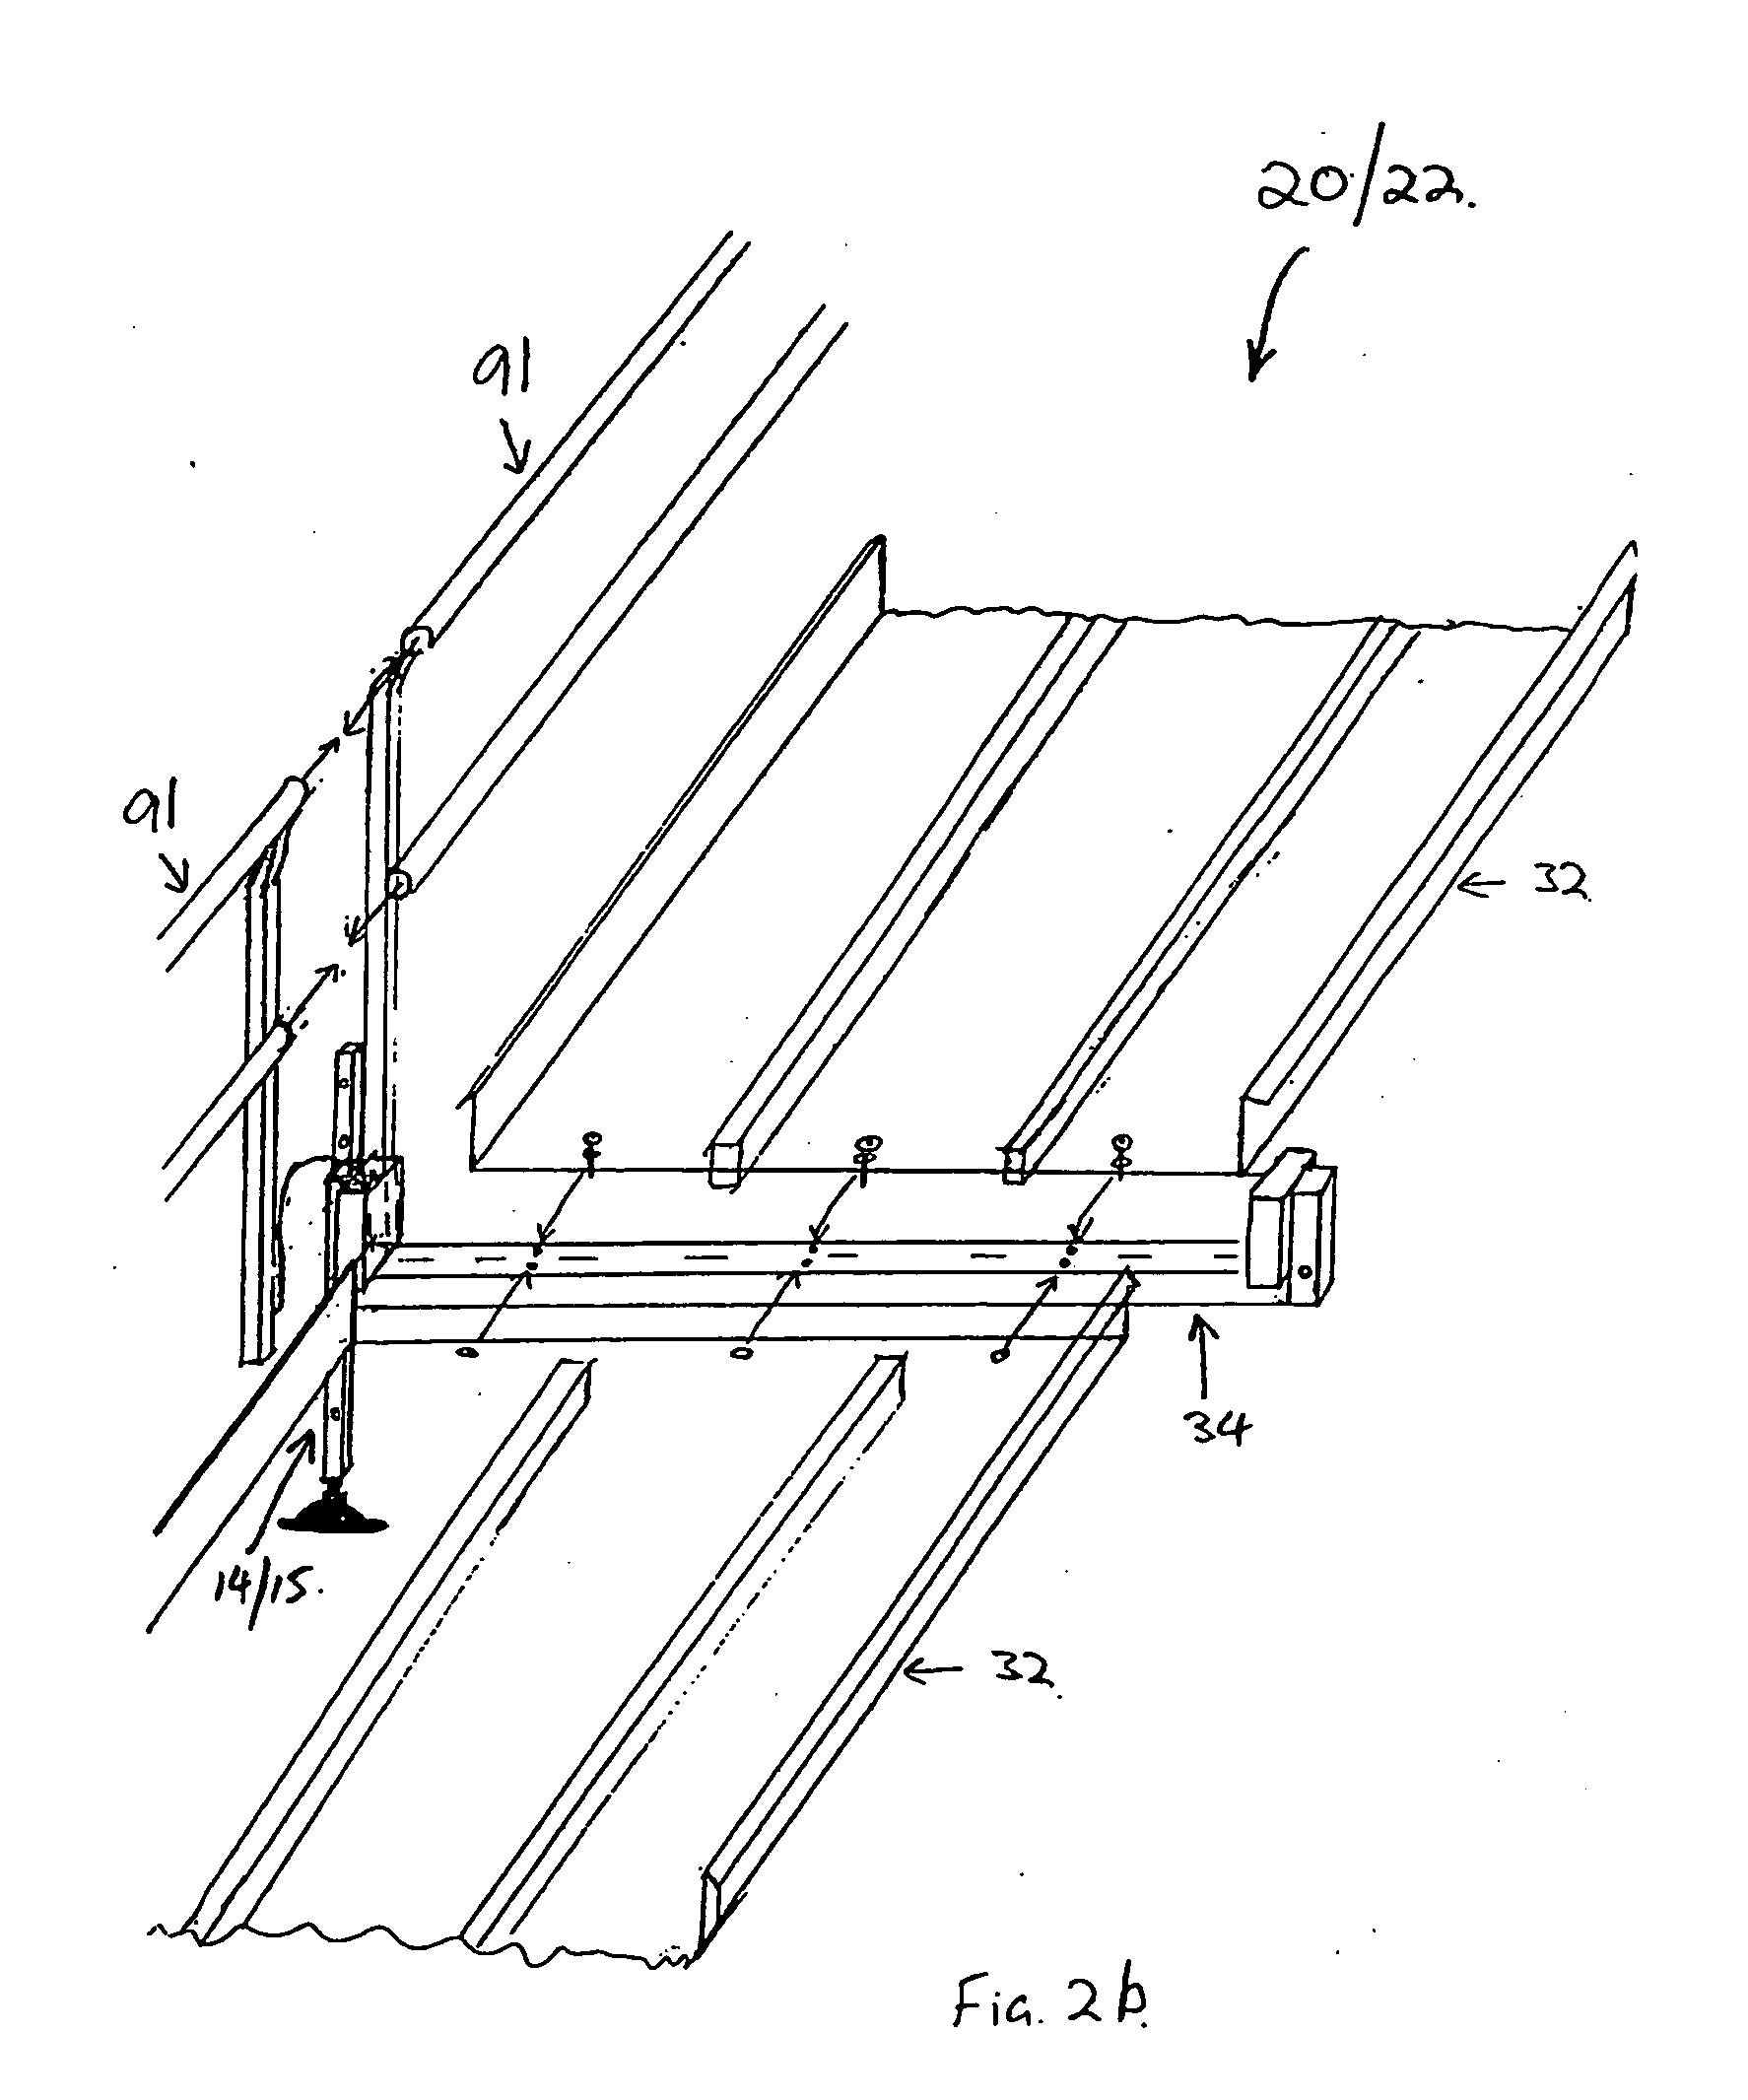 Modular platform, walkway or ramp